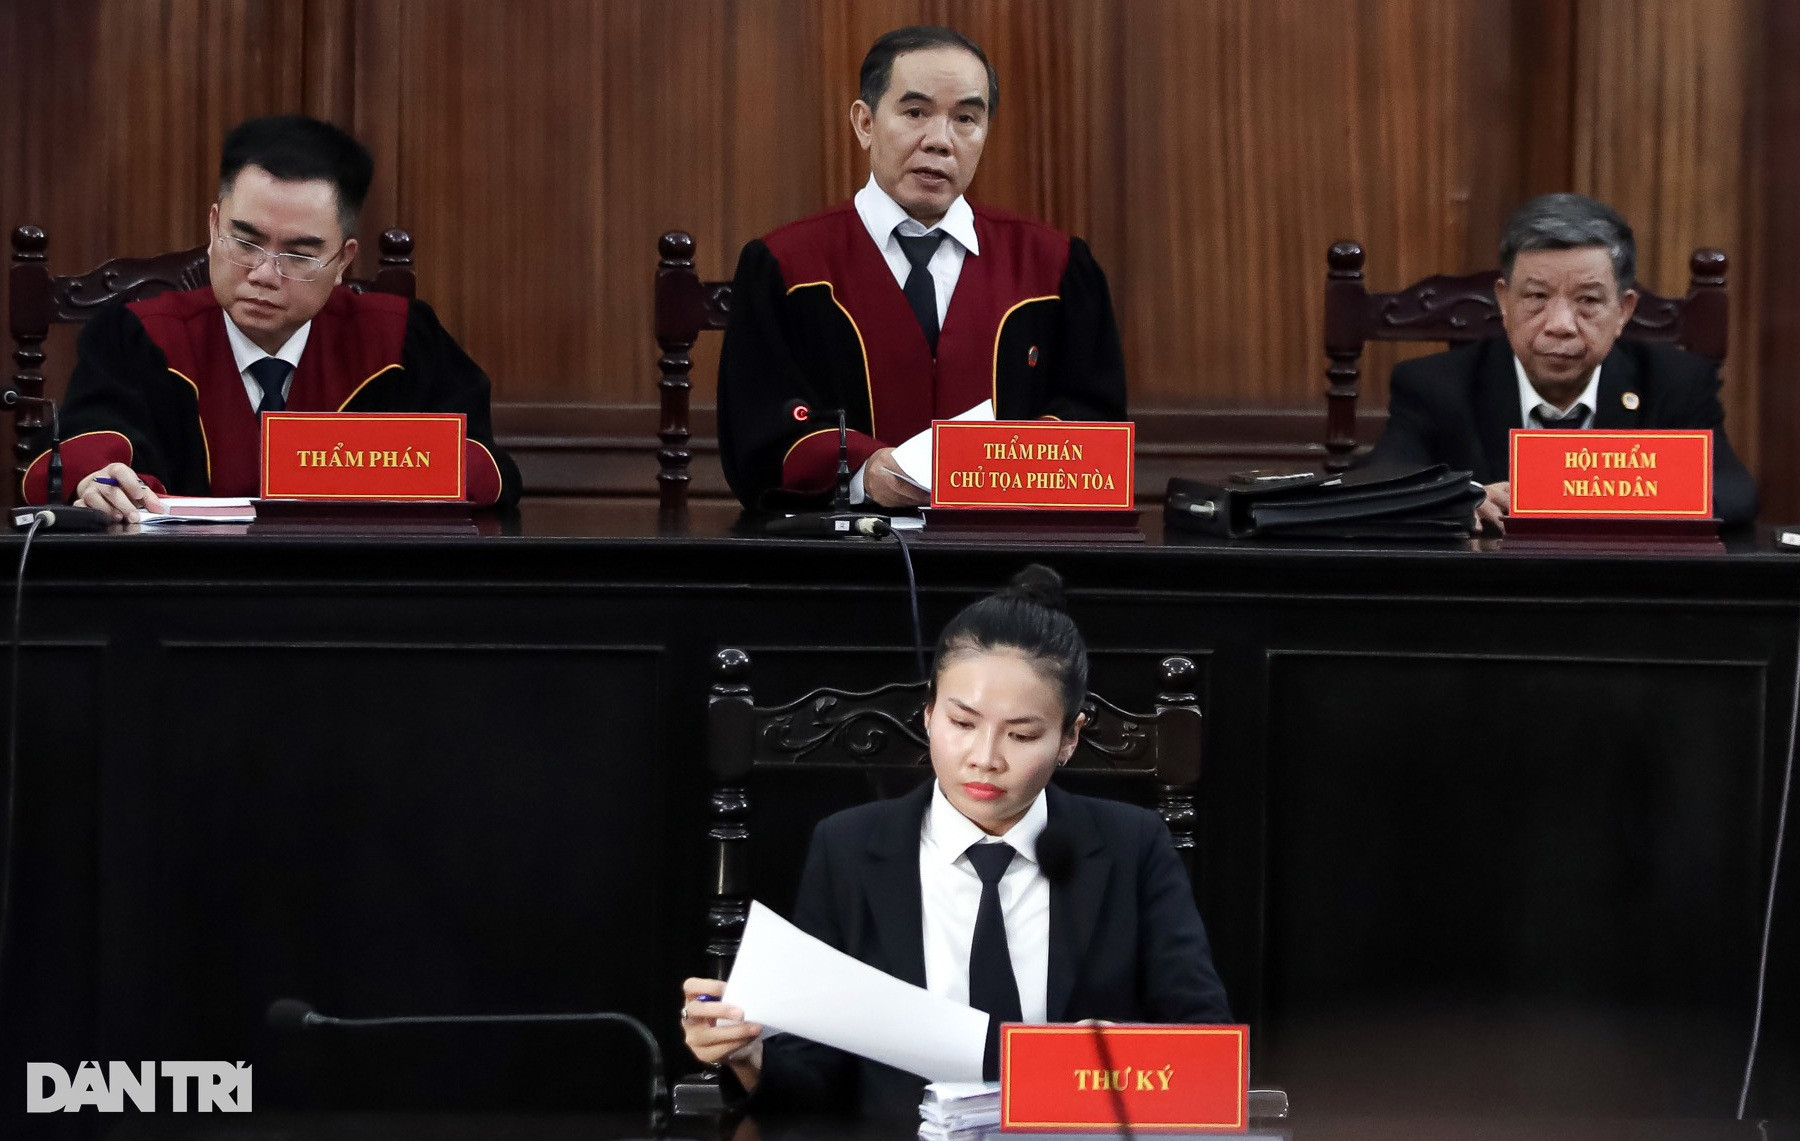 Bị cáo Trần Quí Thanh lĩnh 8 năm tù, một con gái hưởng án treo - 2